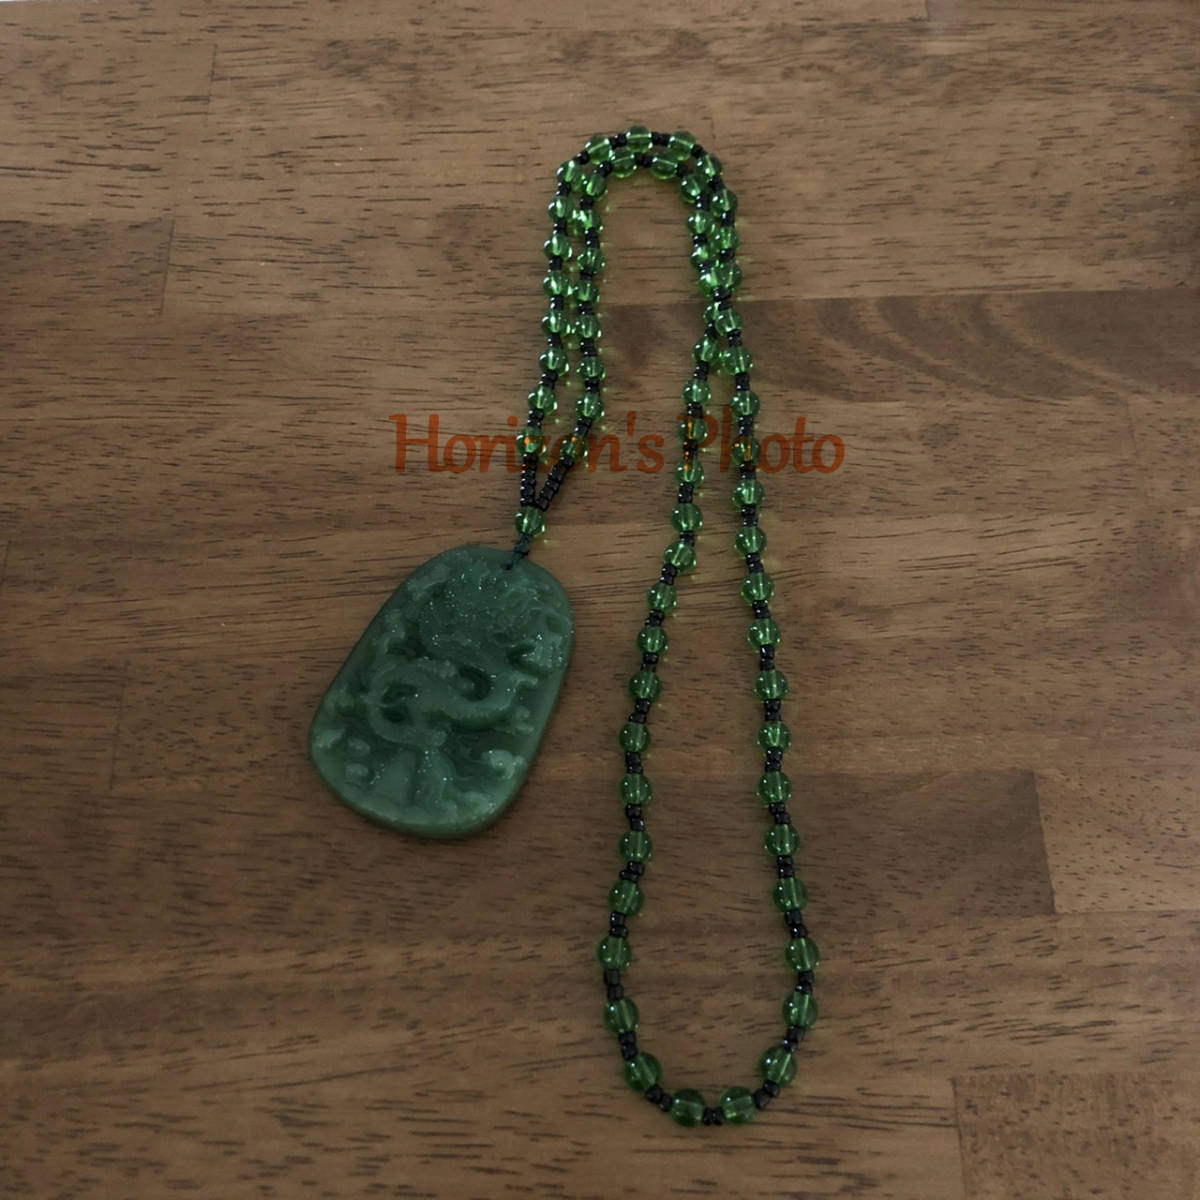 ヒスイ ドラゴン ネックレス 翡翠 彫刻 緑 お守り オシャレ 飾り 魔除け アクセサリー 龍 グリーン